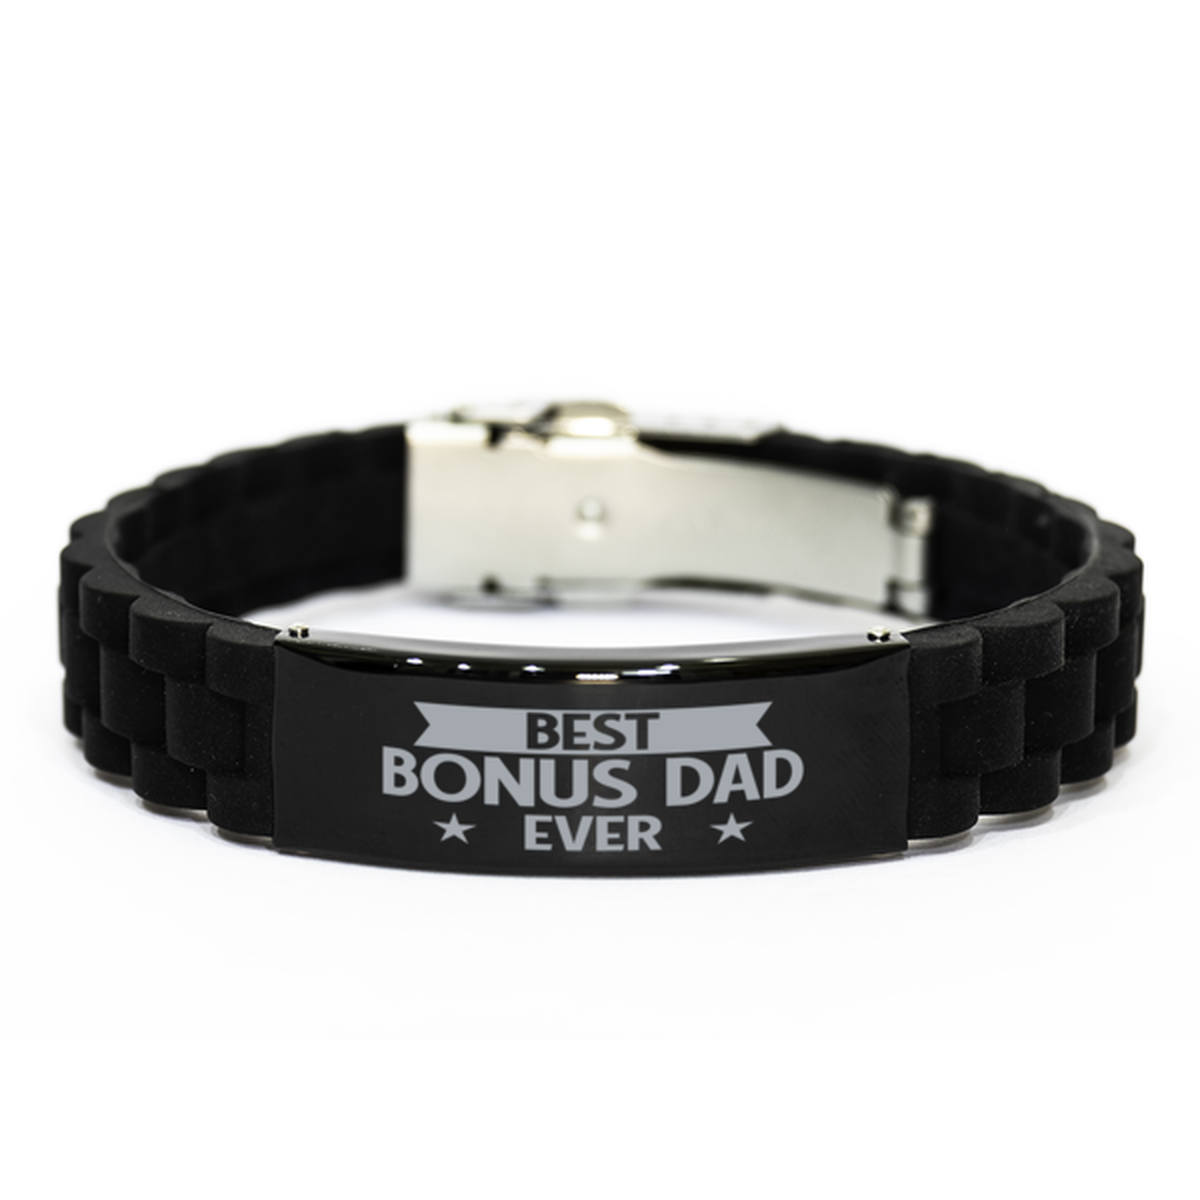 Best Bonus Dad Ever Bonus Dad Gifts, Funny Black Engraved Bracelet For Bonus Dad, Family Gifts For Men